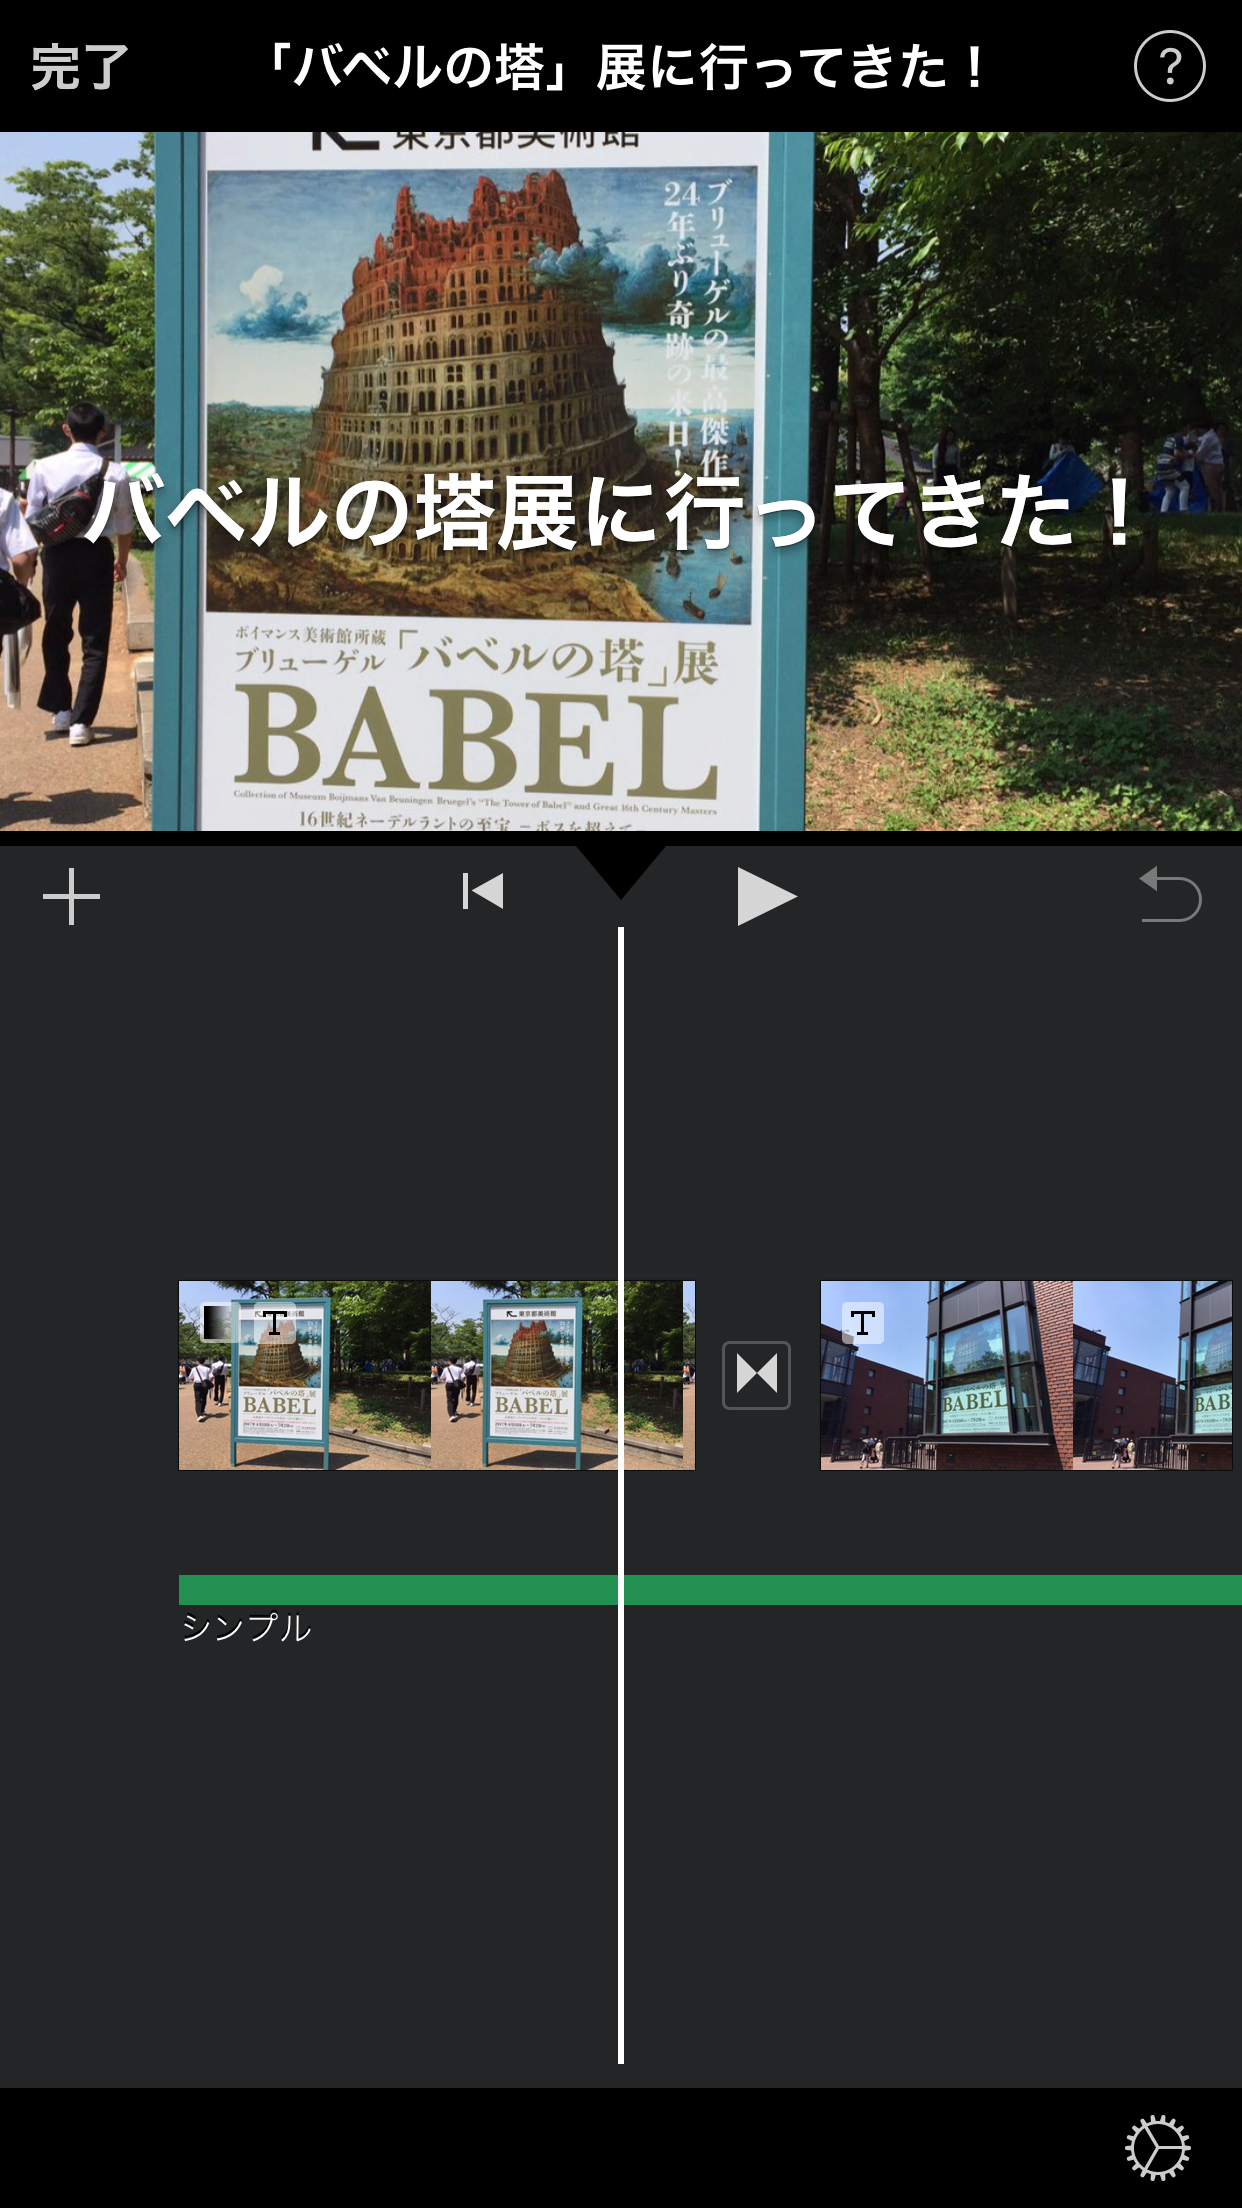 iMovieに写真や動画を追加していく。